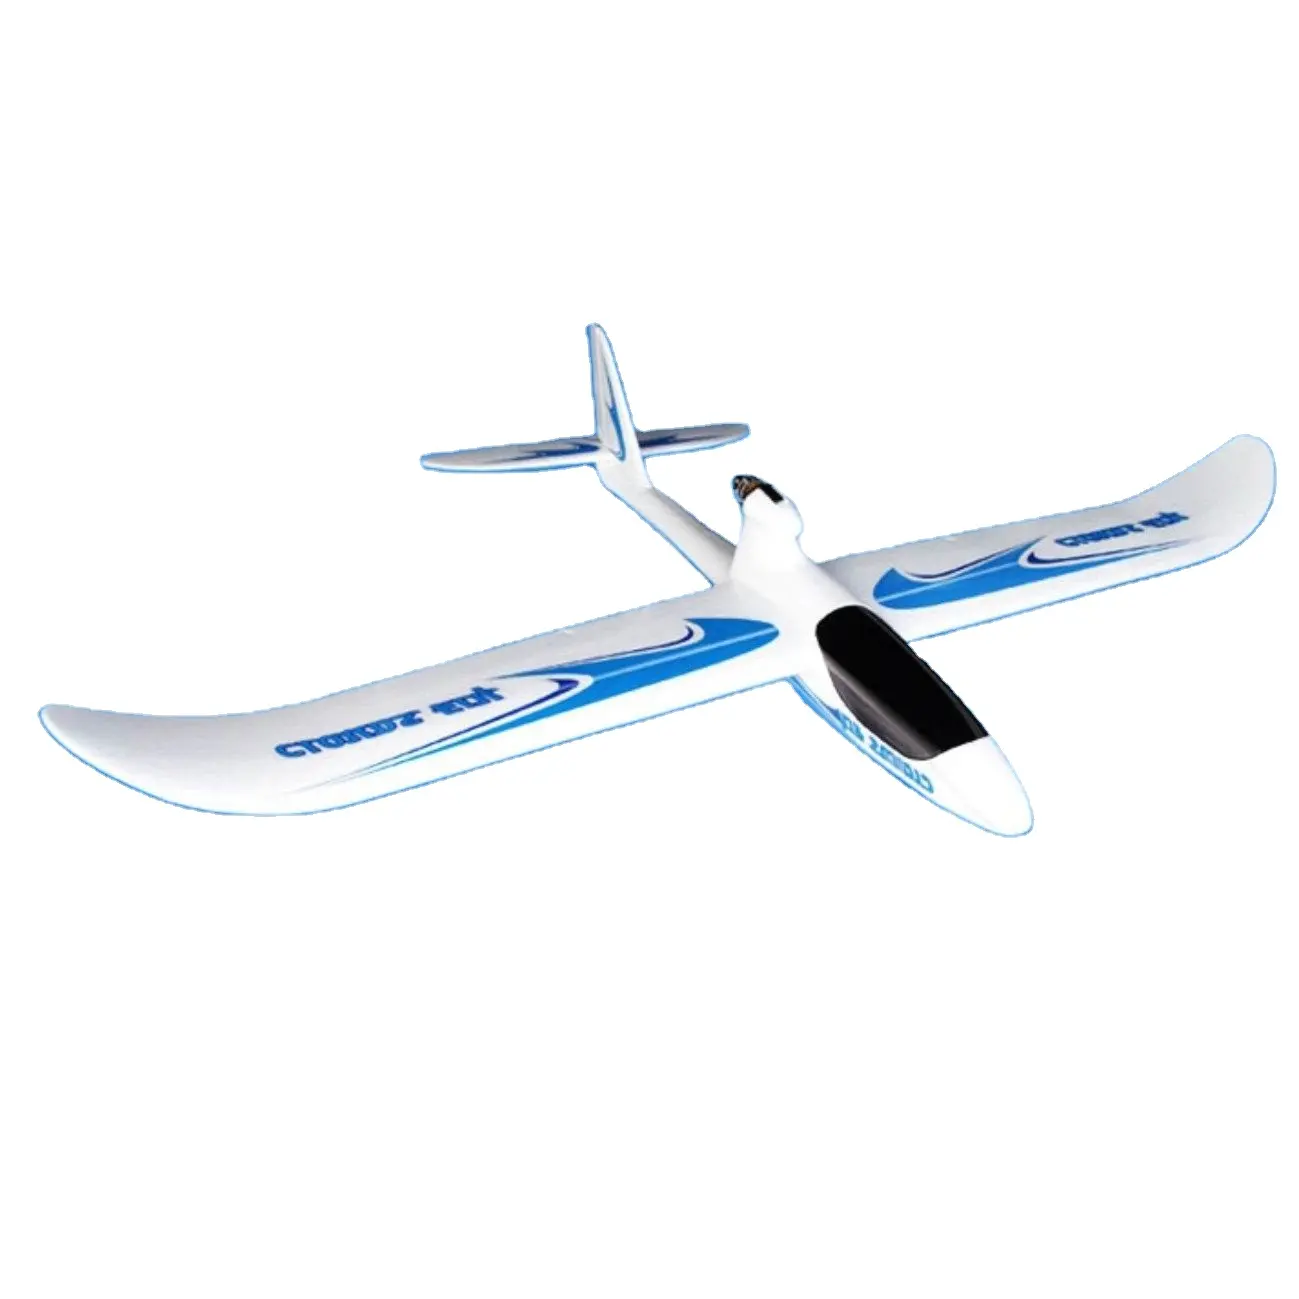 नई Sailplane बैटरी आर सी बिजली फ्लाई ग्लाइडर्स आर सी बिजली फ्लाई ग्लाइडर्स के लिए आर सी हॉबी विमान वयस्क